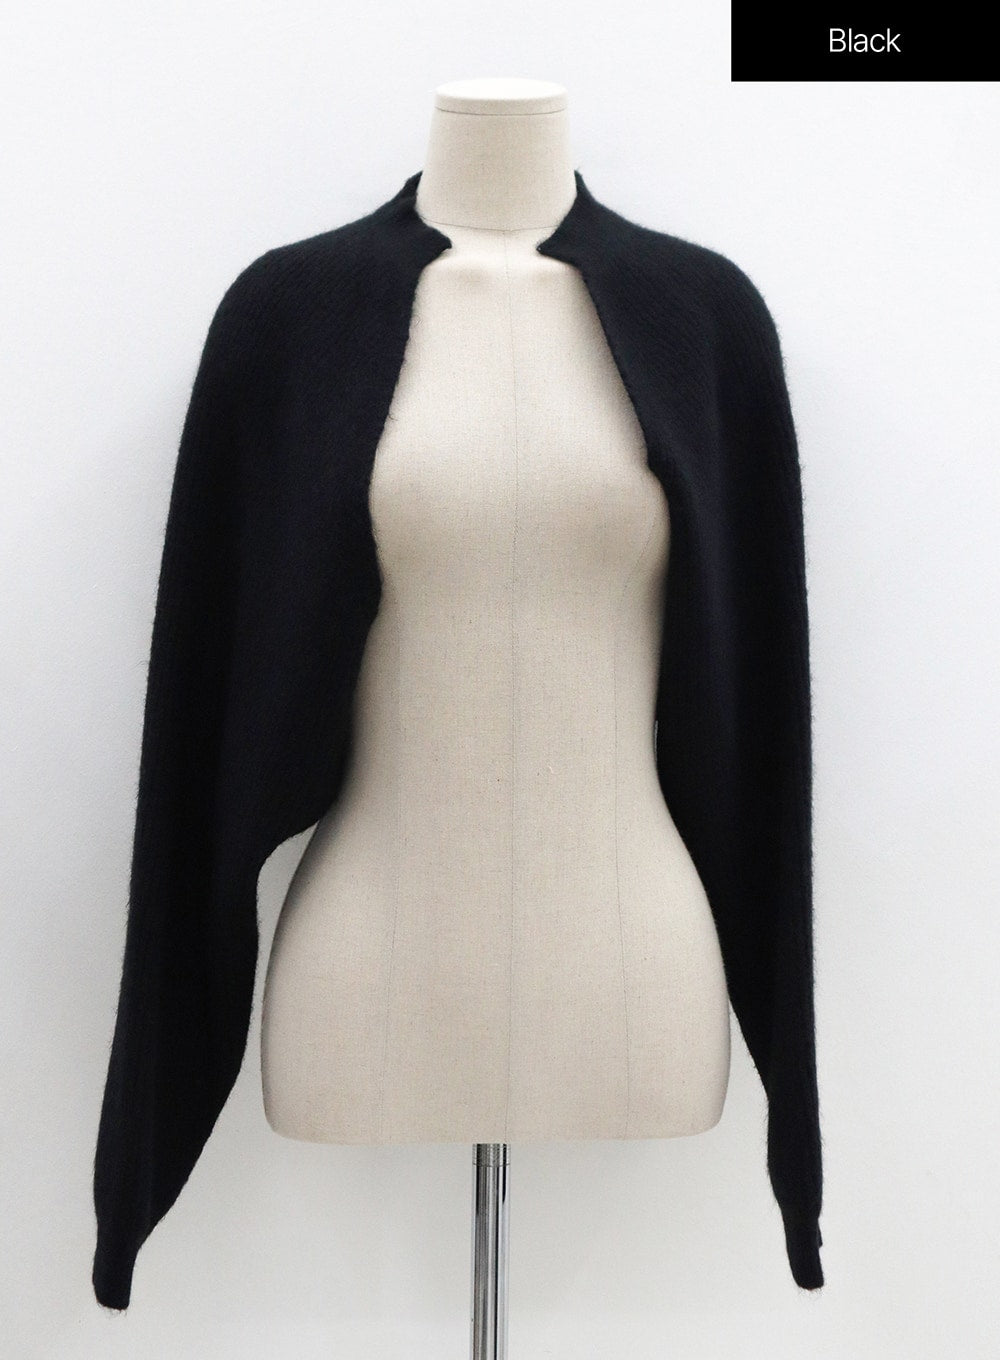 Bolero Jacket Cropped Sleeveless Knit Set OS22